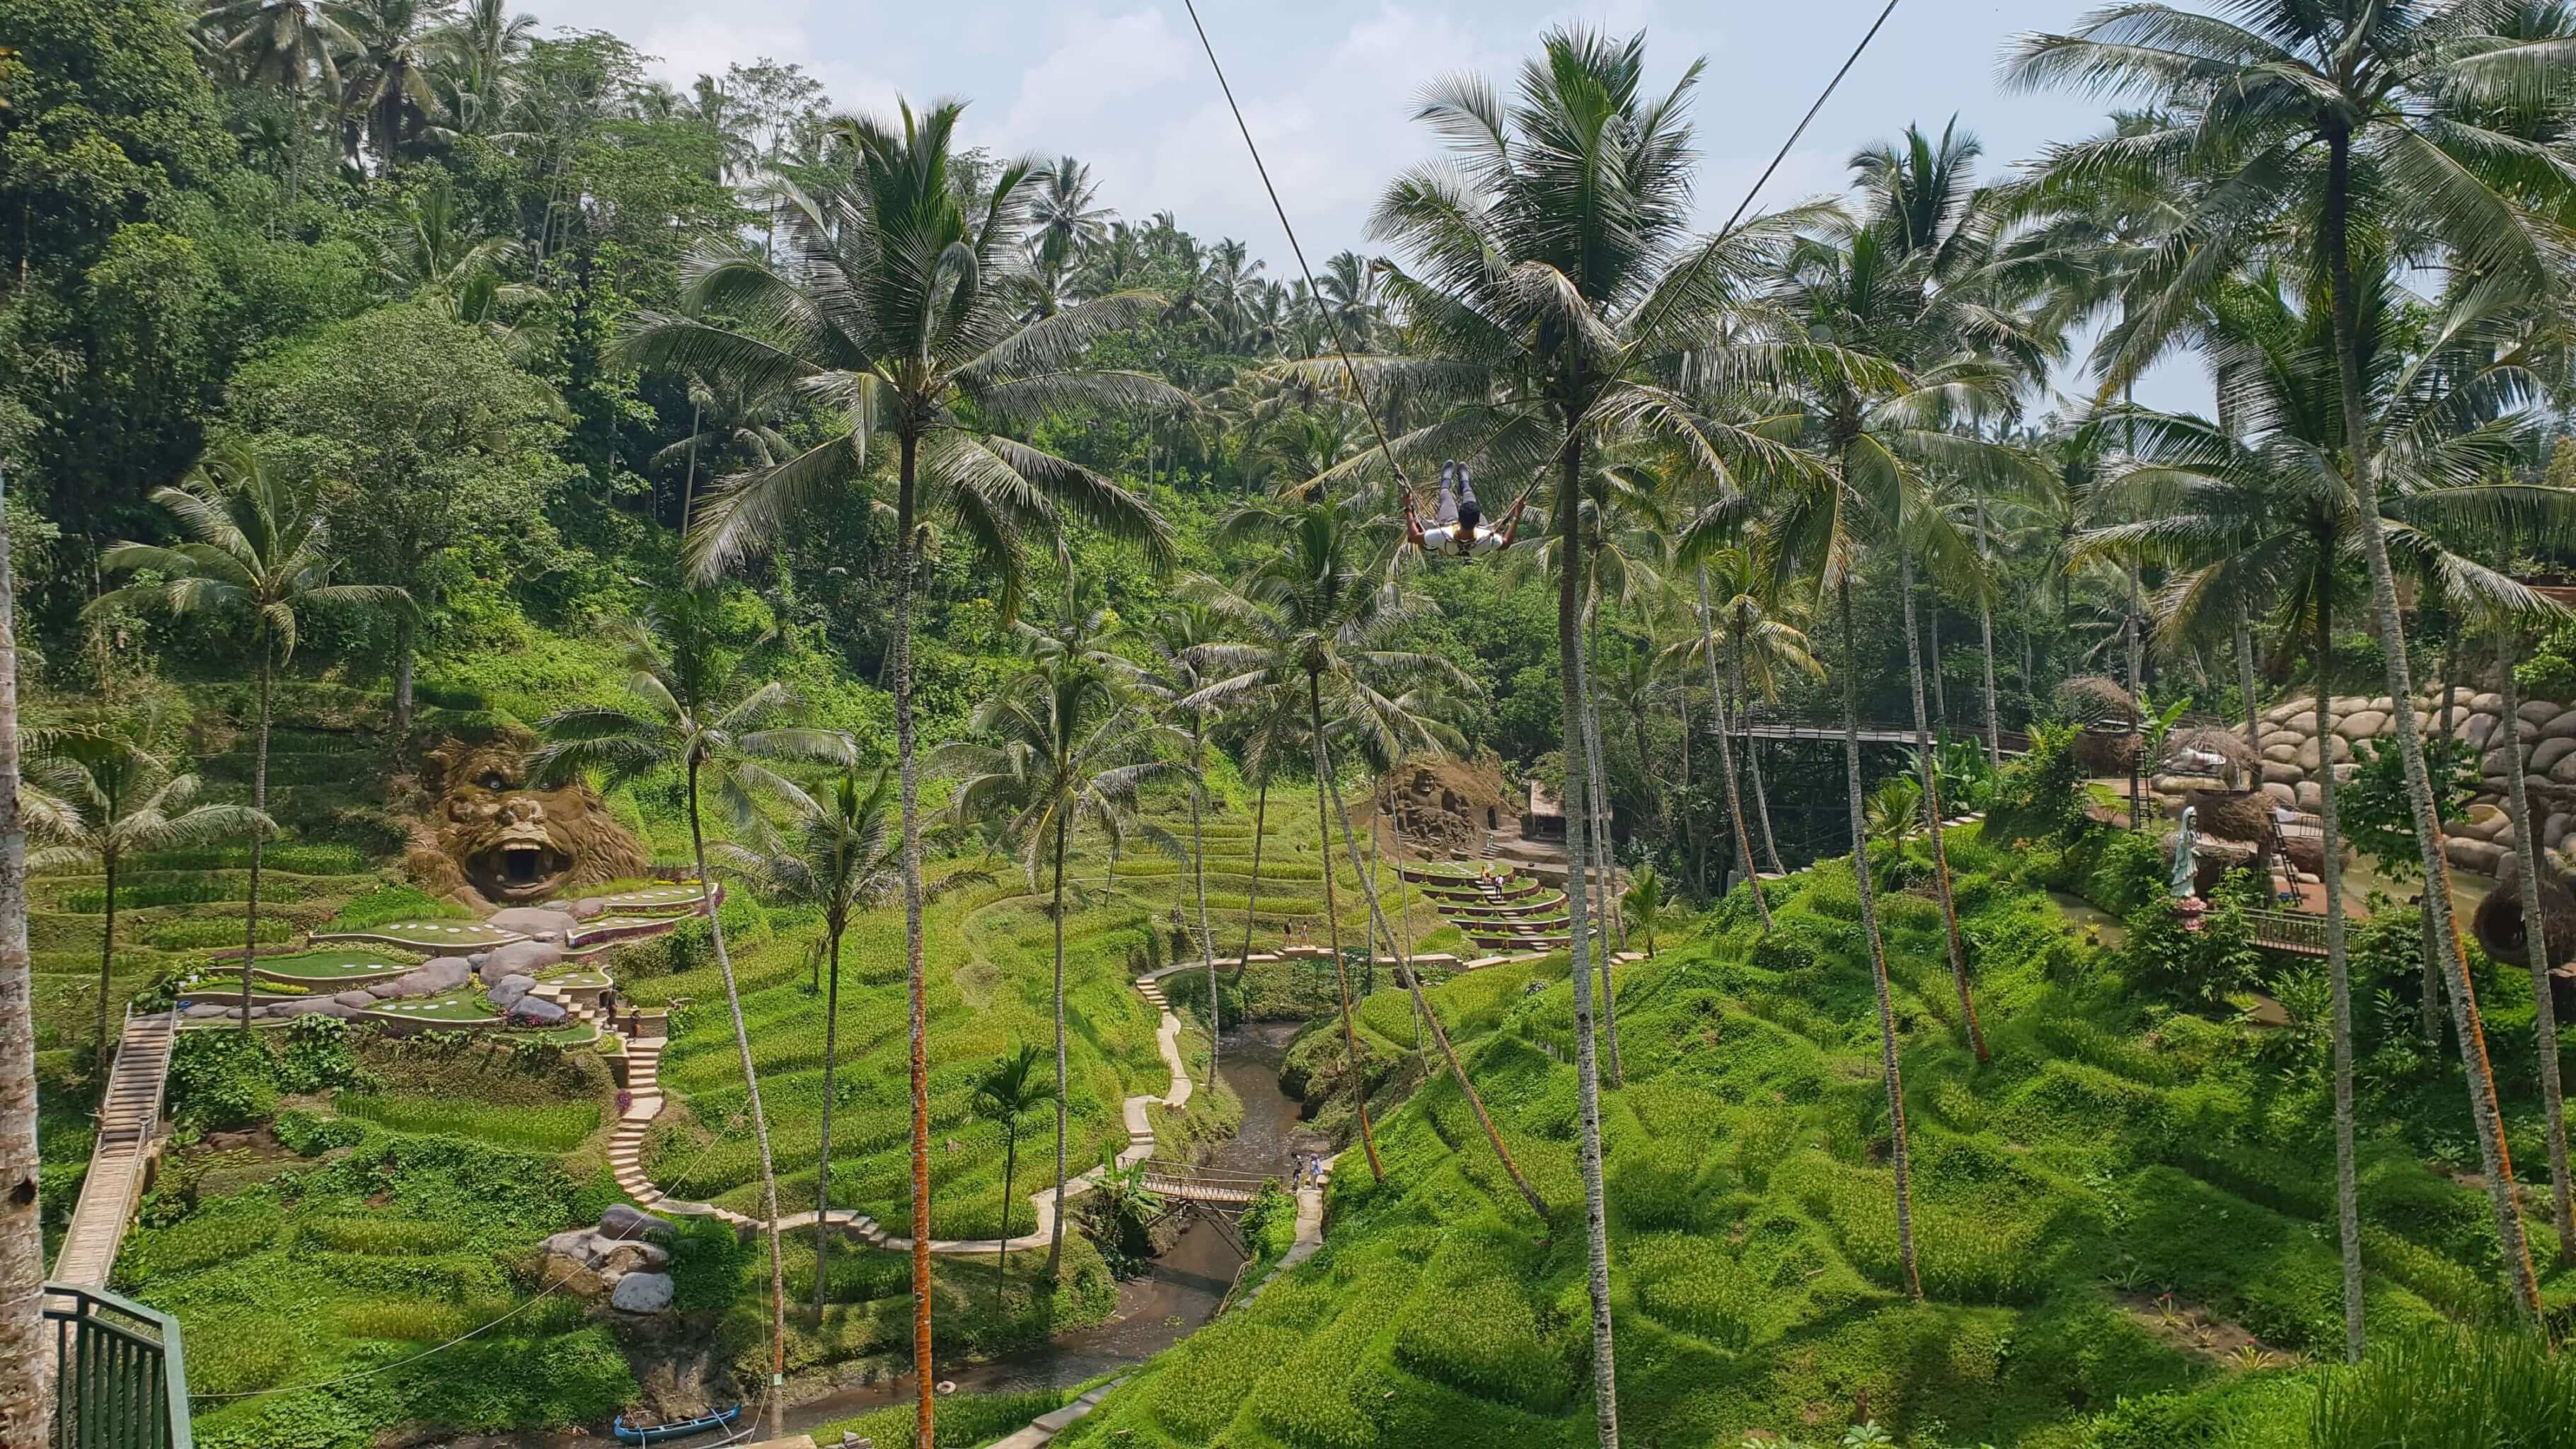 Bali Swing is one activity I absolutely enjoyed in Ubud